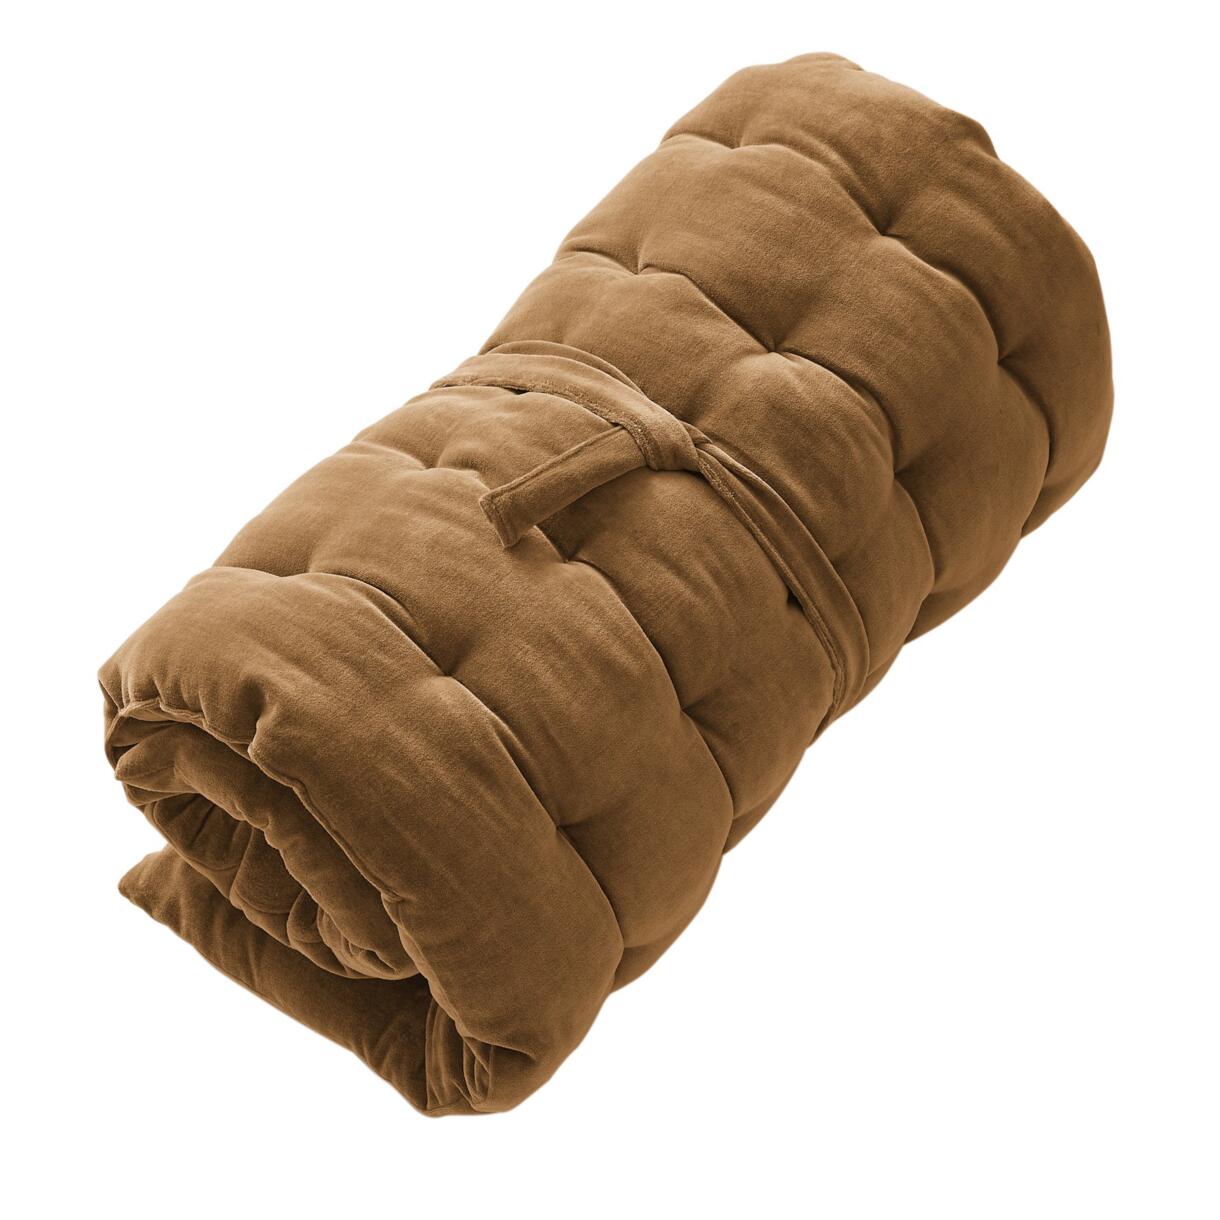 Colchón de suelo en terciopelo de algodón (60 x 120 cm) César Camello 6